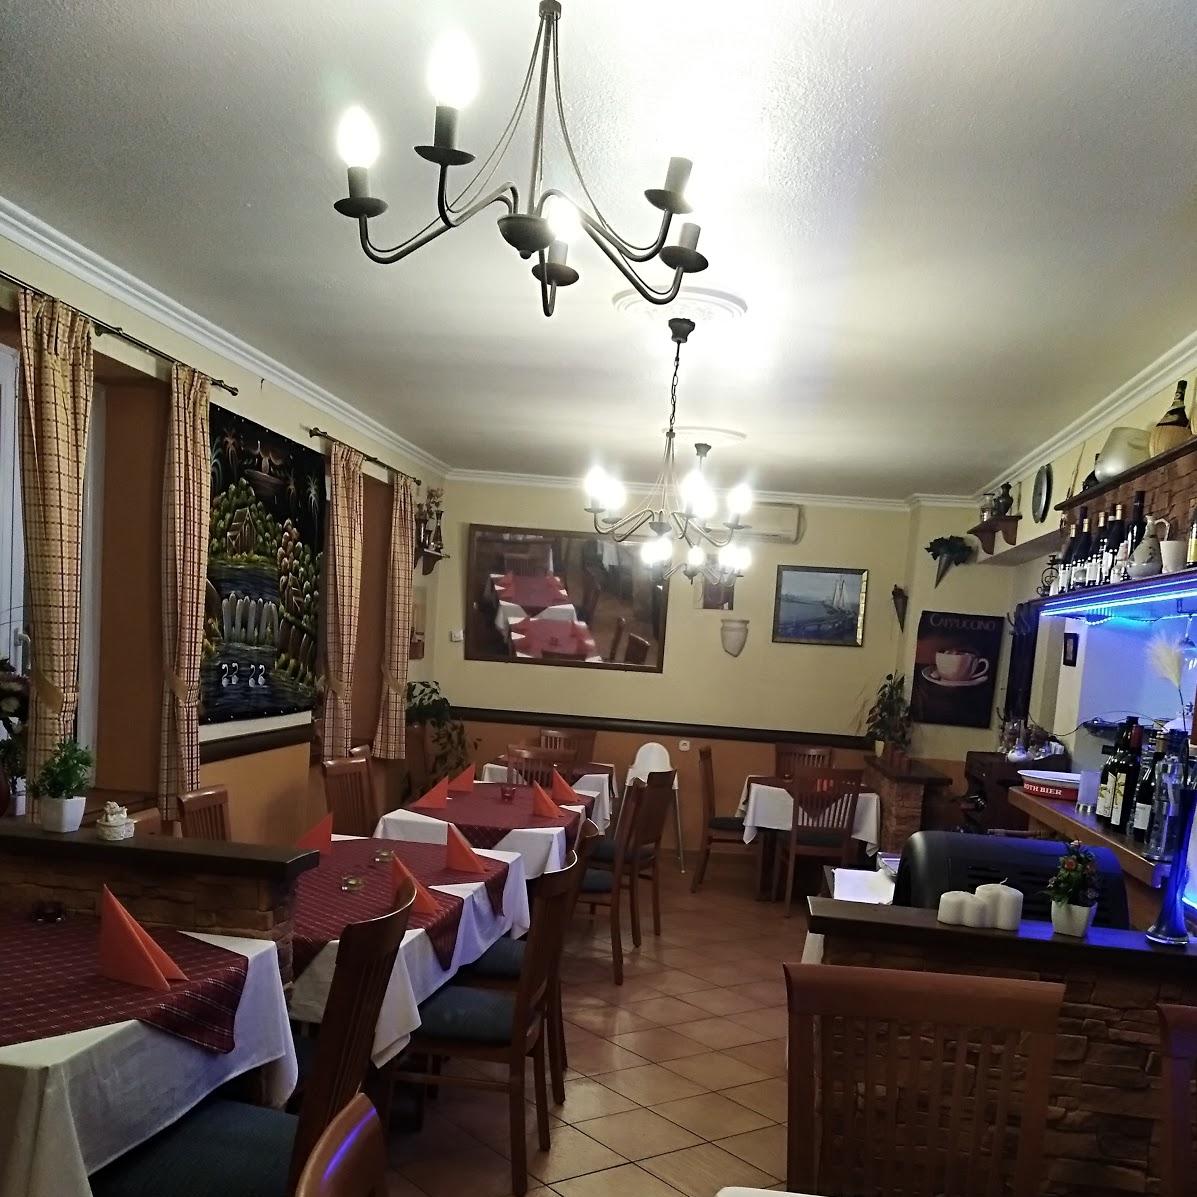 Restaurant "Bombay Pizzeria & Indisches Restaurant" in Schweinfurt